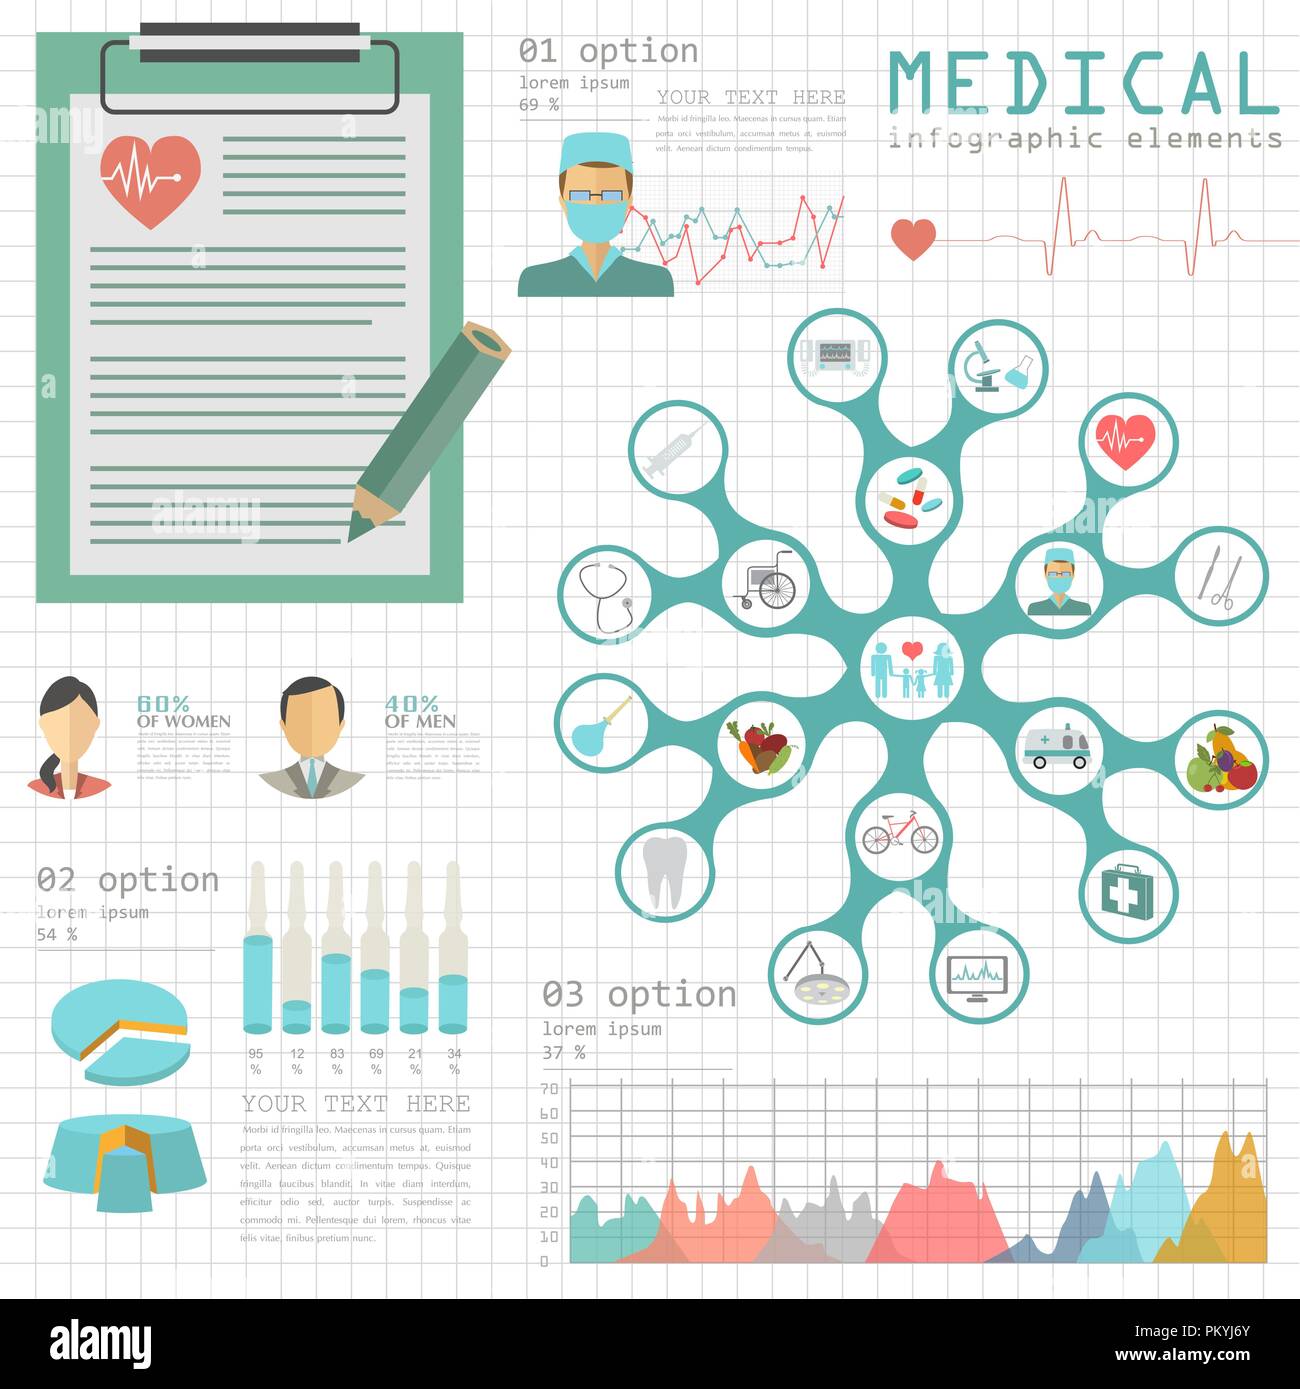 Medizin und Gesundheitswesen Infografik, Elemente für die Erstellung von Infografiken. Vector Illustration Stock Vektor